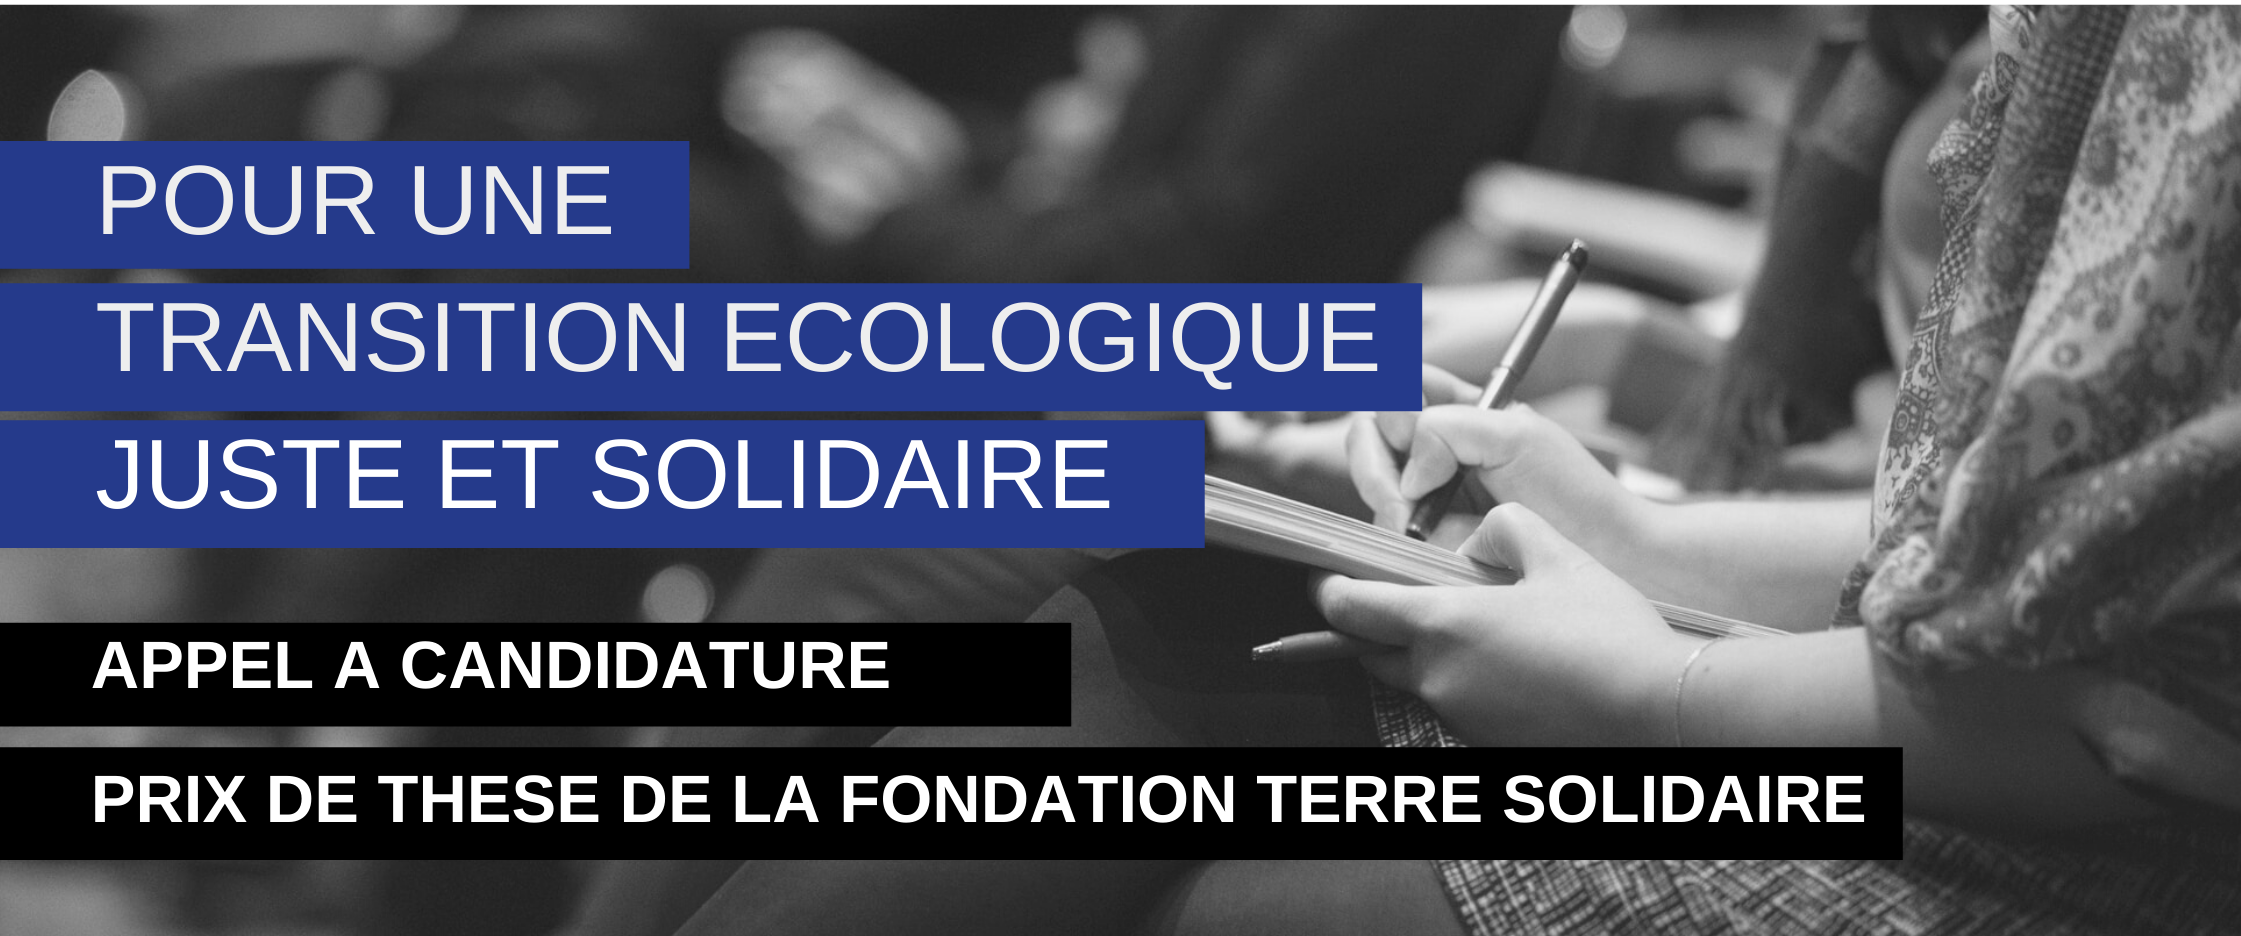 Prix de thèse Fondation Terre Solidaire en faveur d'une transition écologique, juste et solidaire